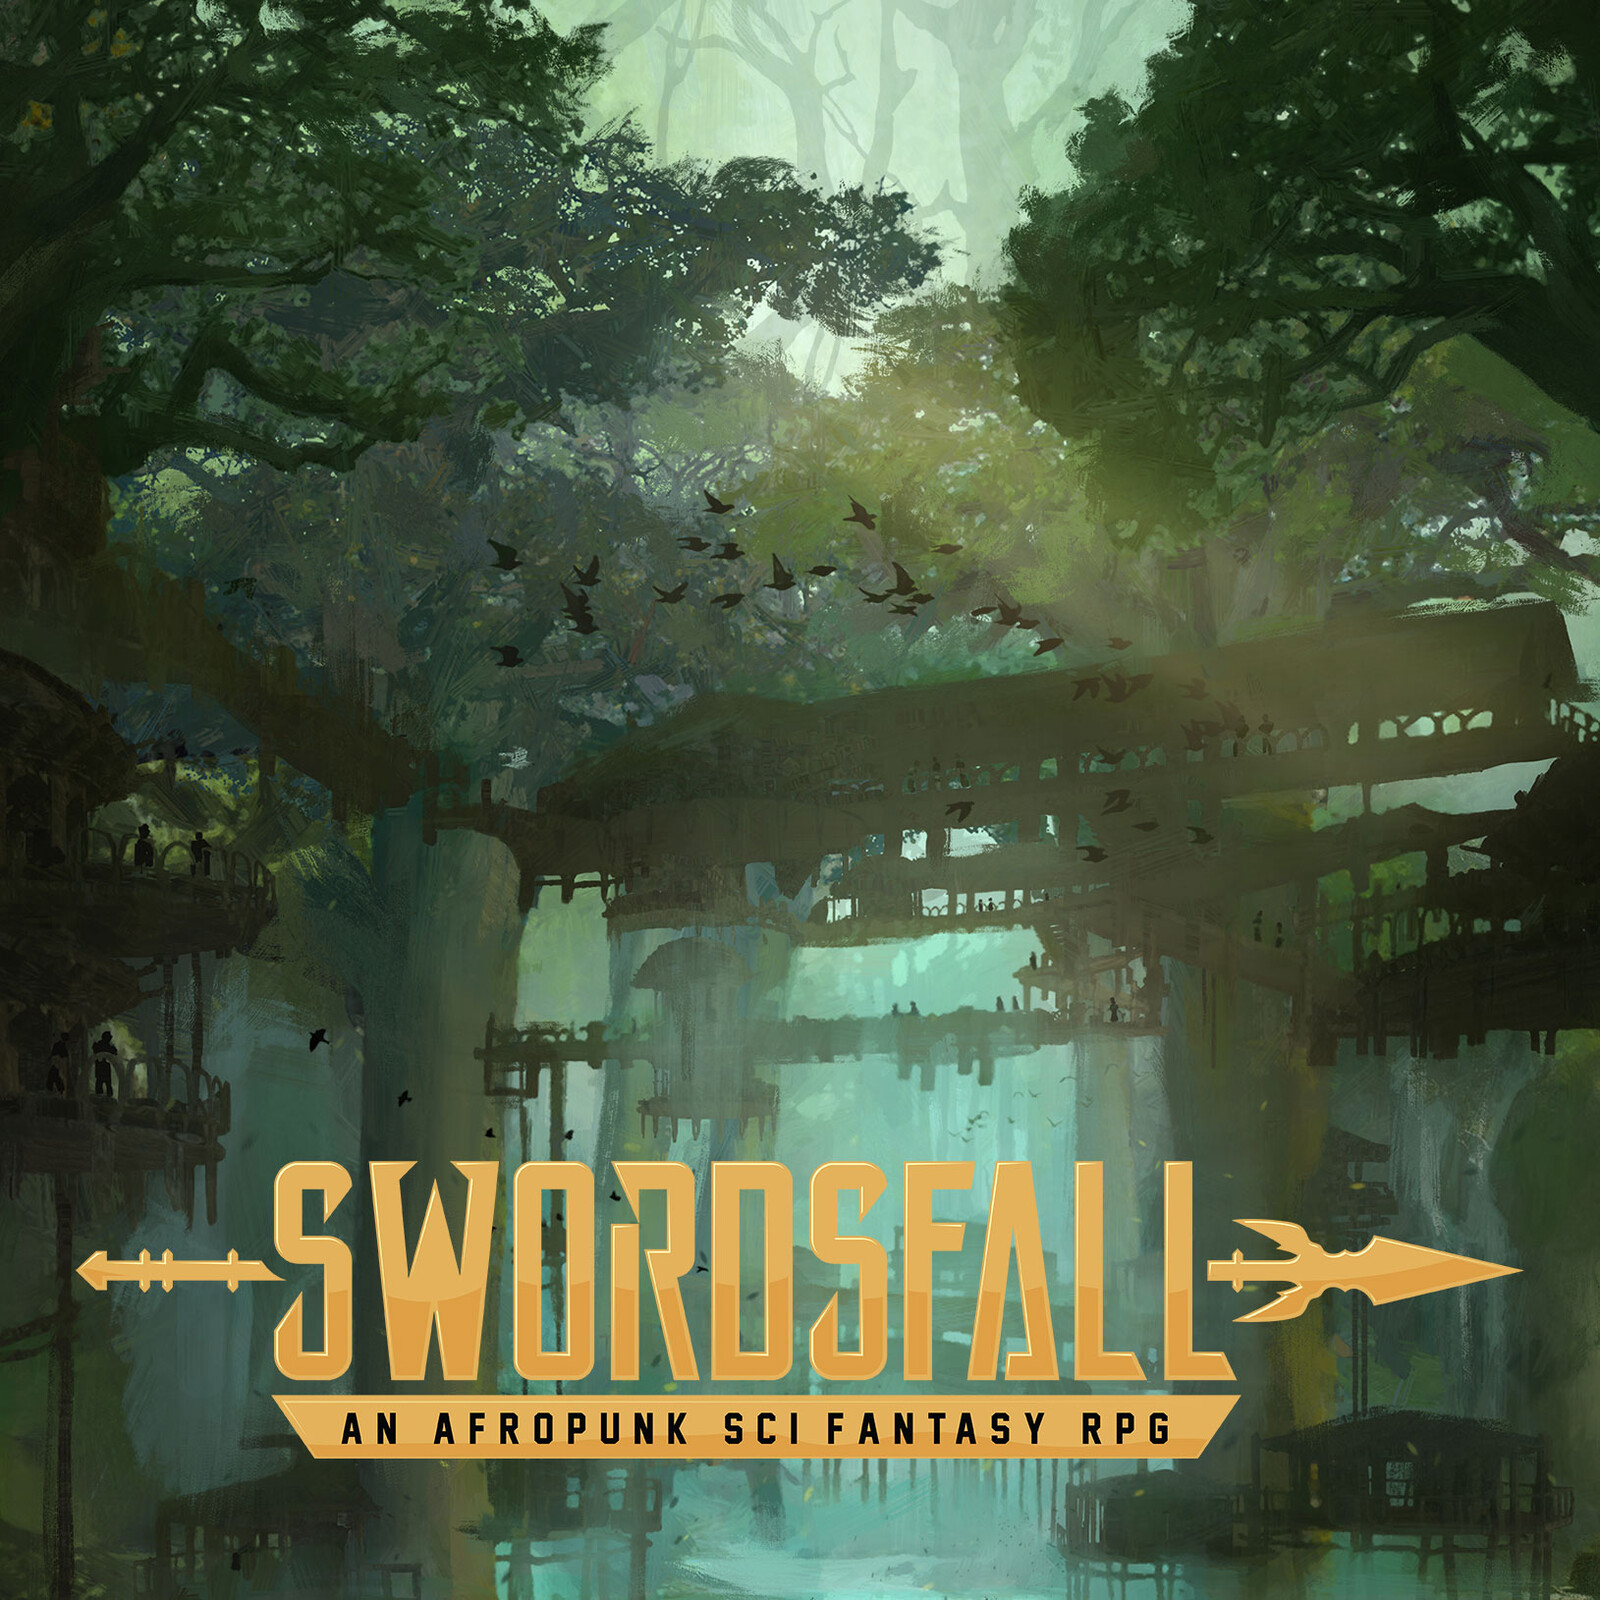 Swordsfall - Garuda Waterfalls